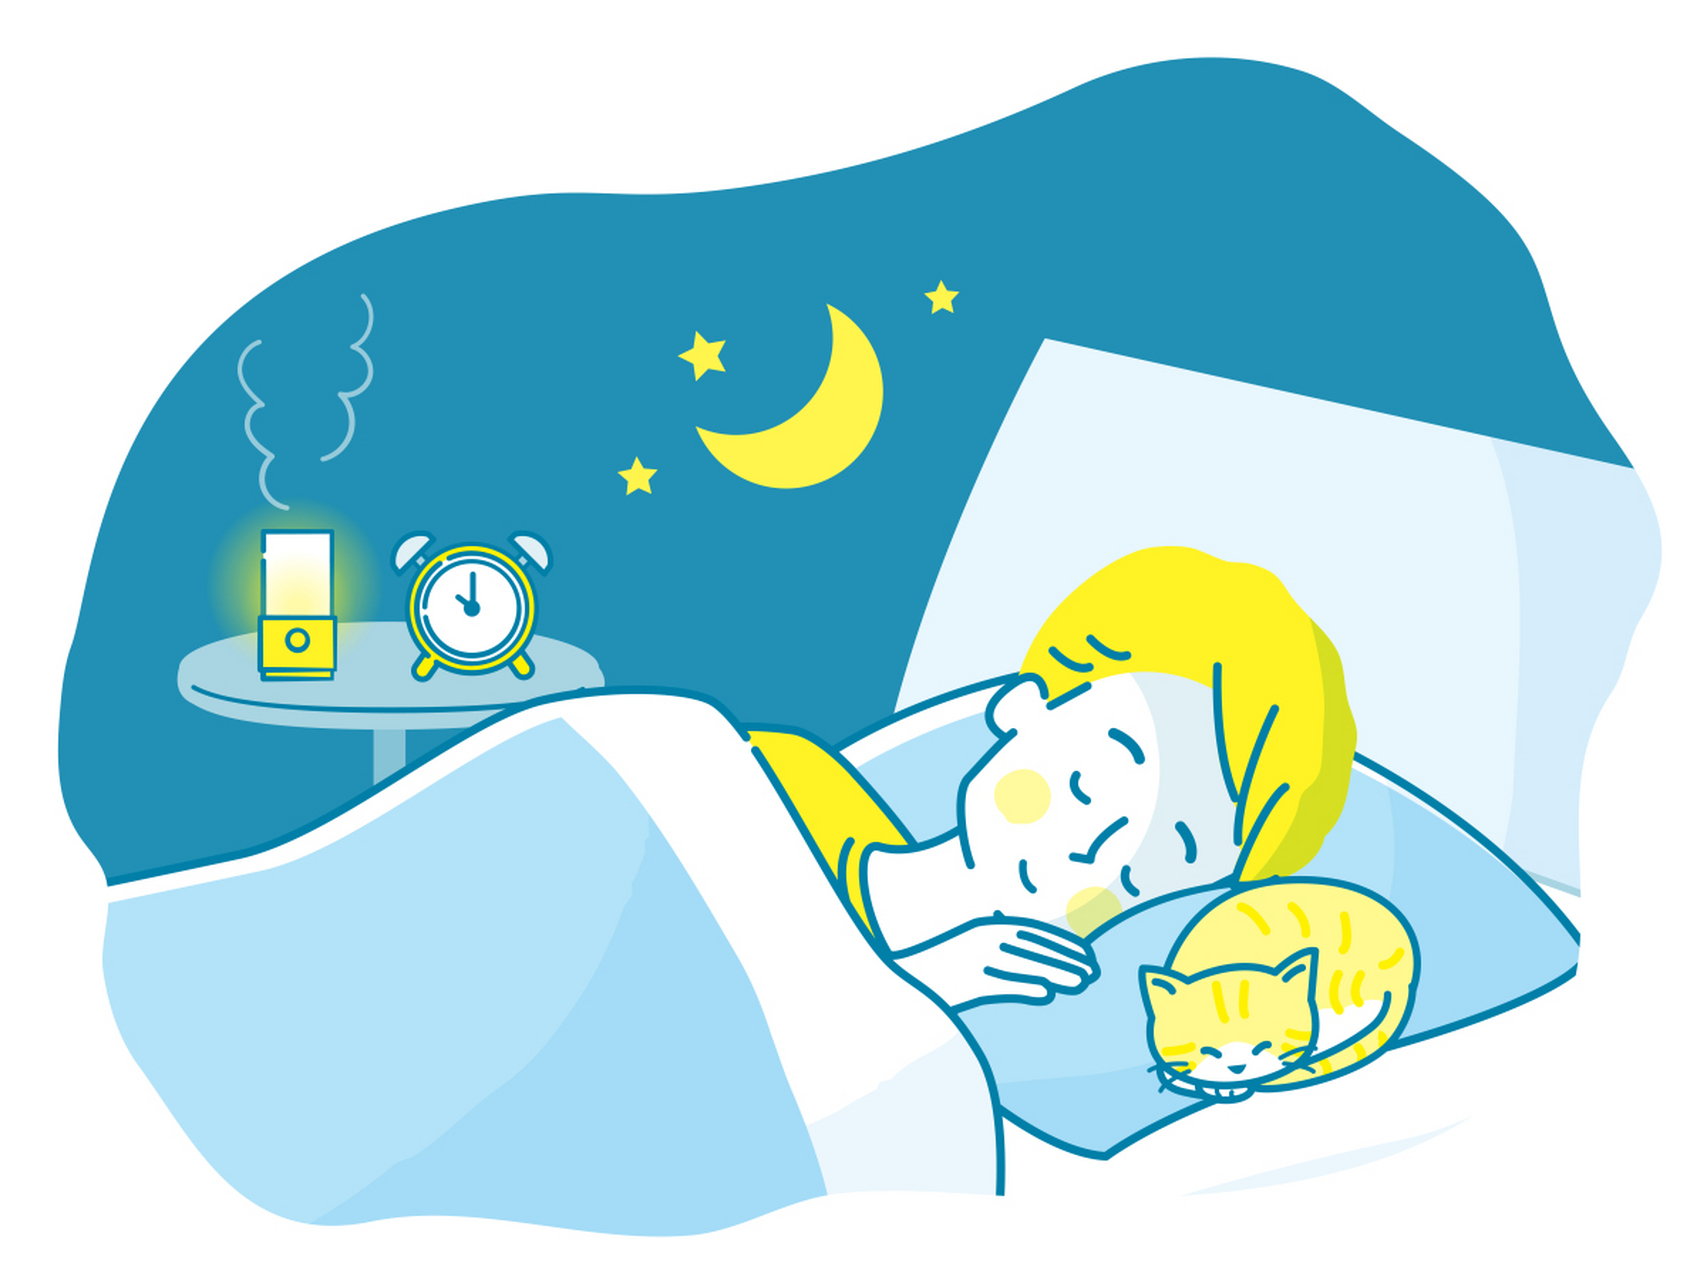 同时,要注意睡眠的质量,选择舒适的床铺和环境,避免光线和噪音的干扰